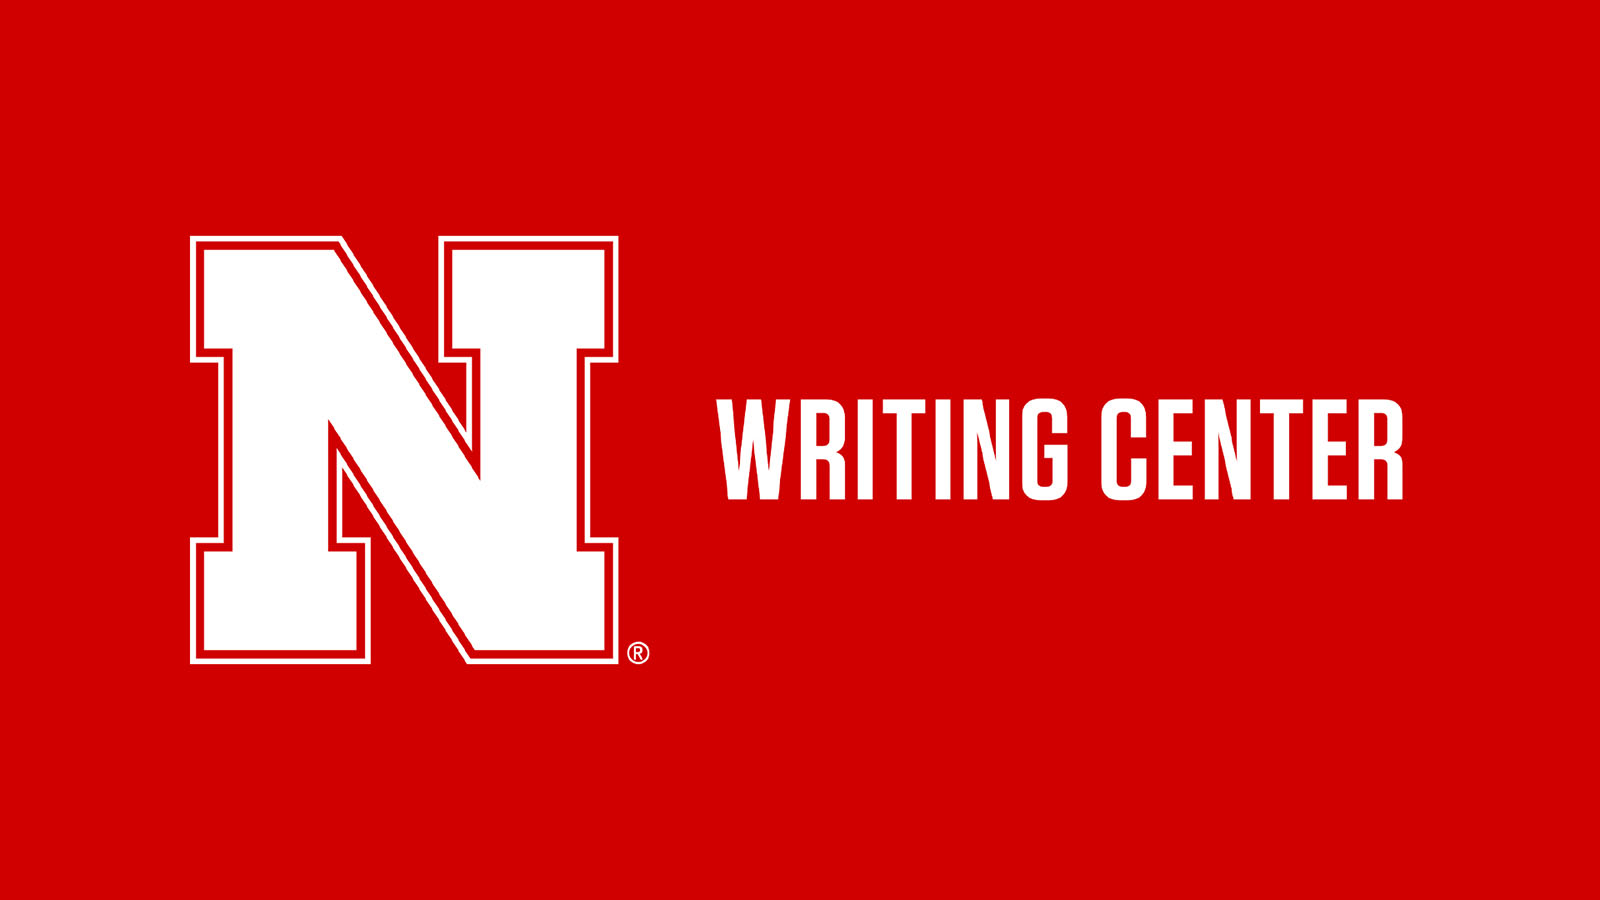 Writing Center logo; links to news story